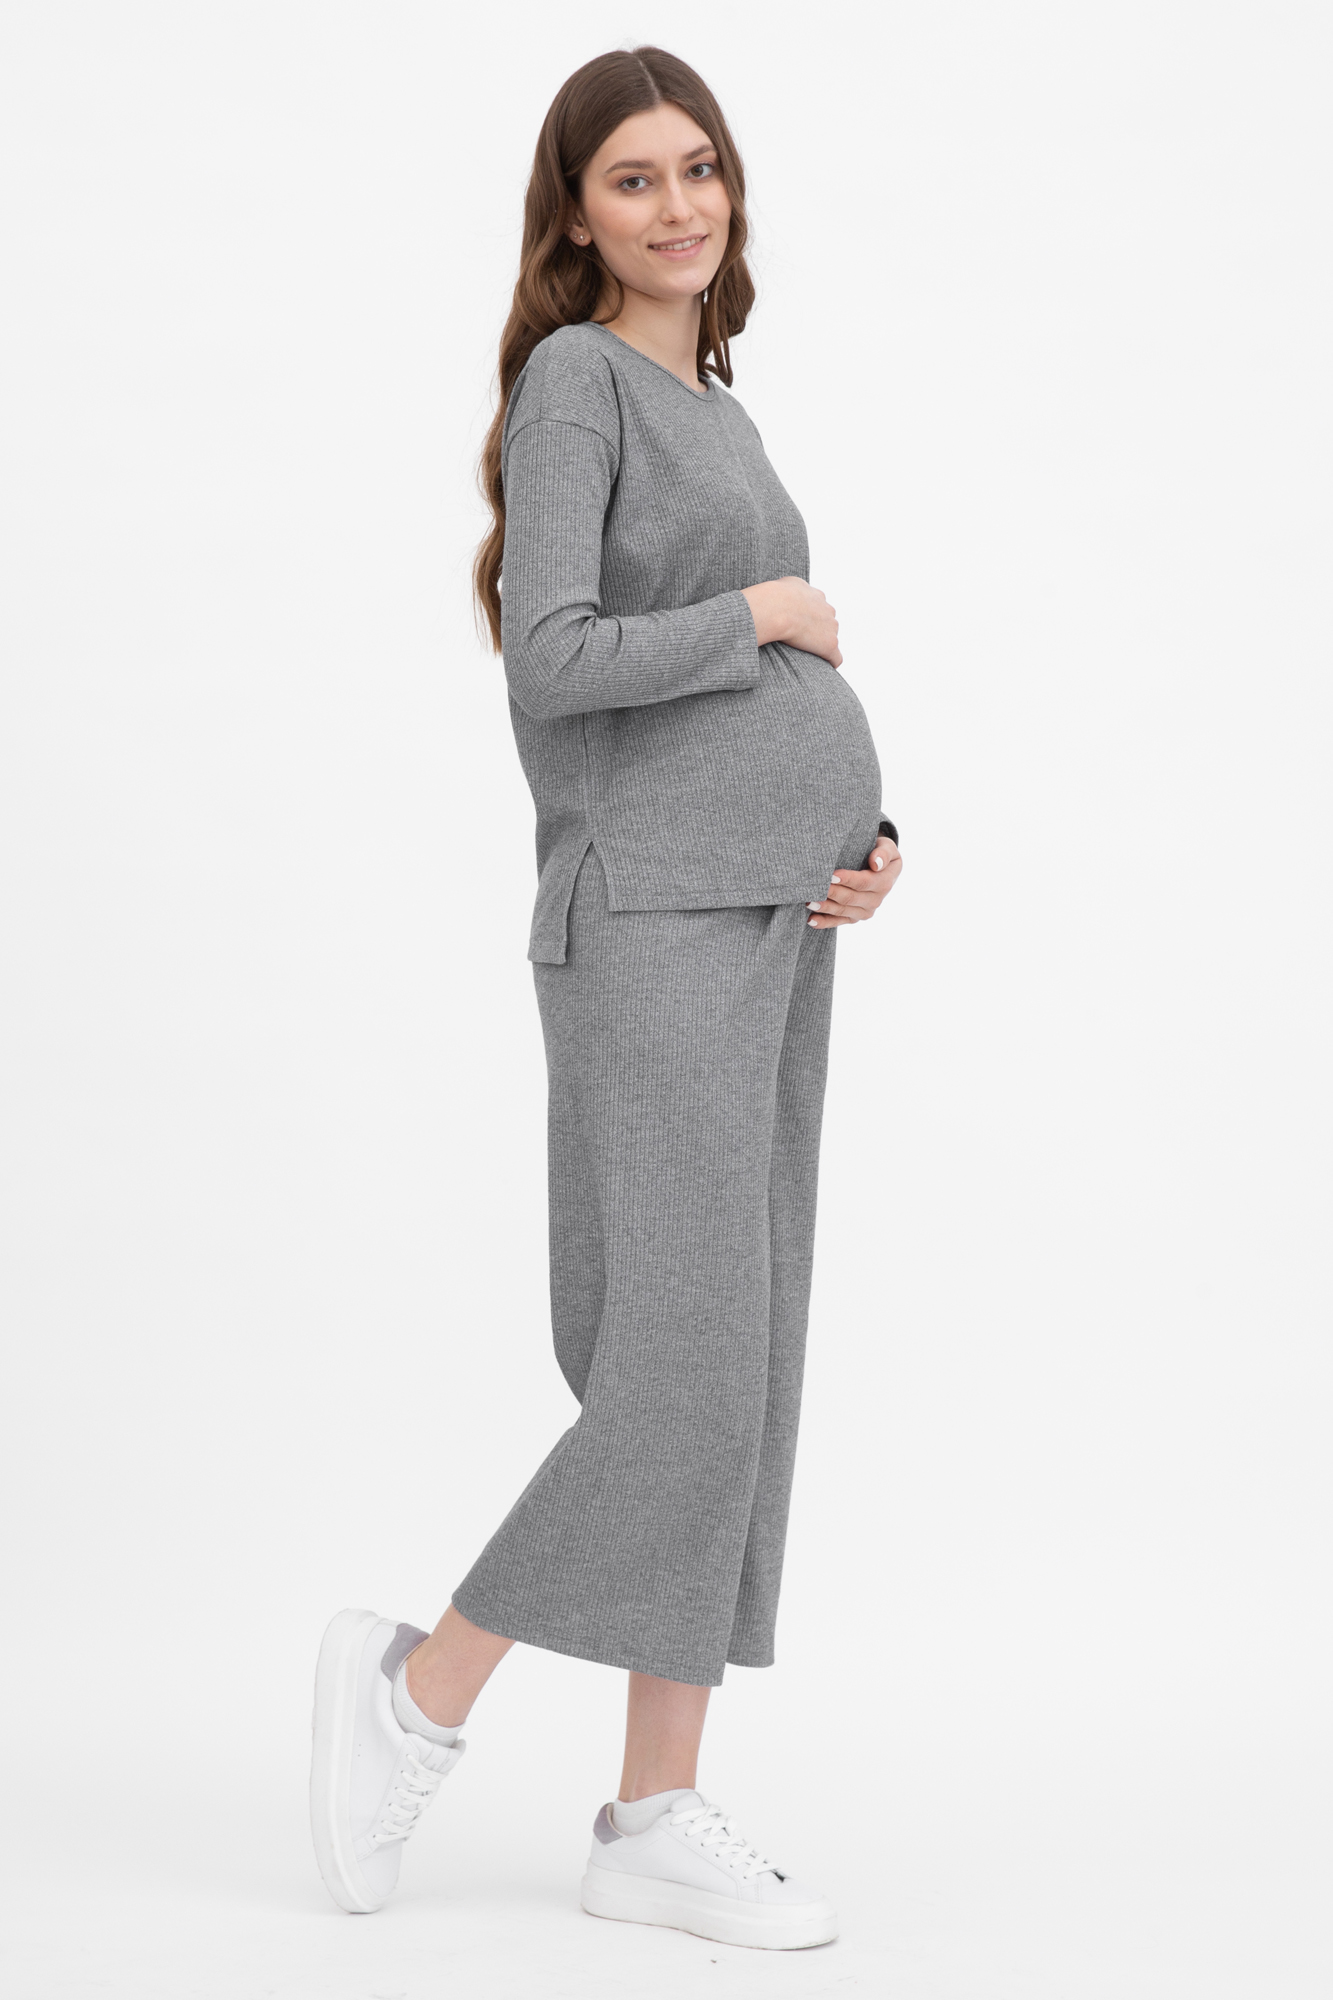 Костюм для беременных женский Magica bellezza 0184а серый 44 RU